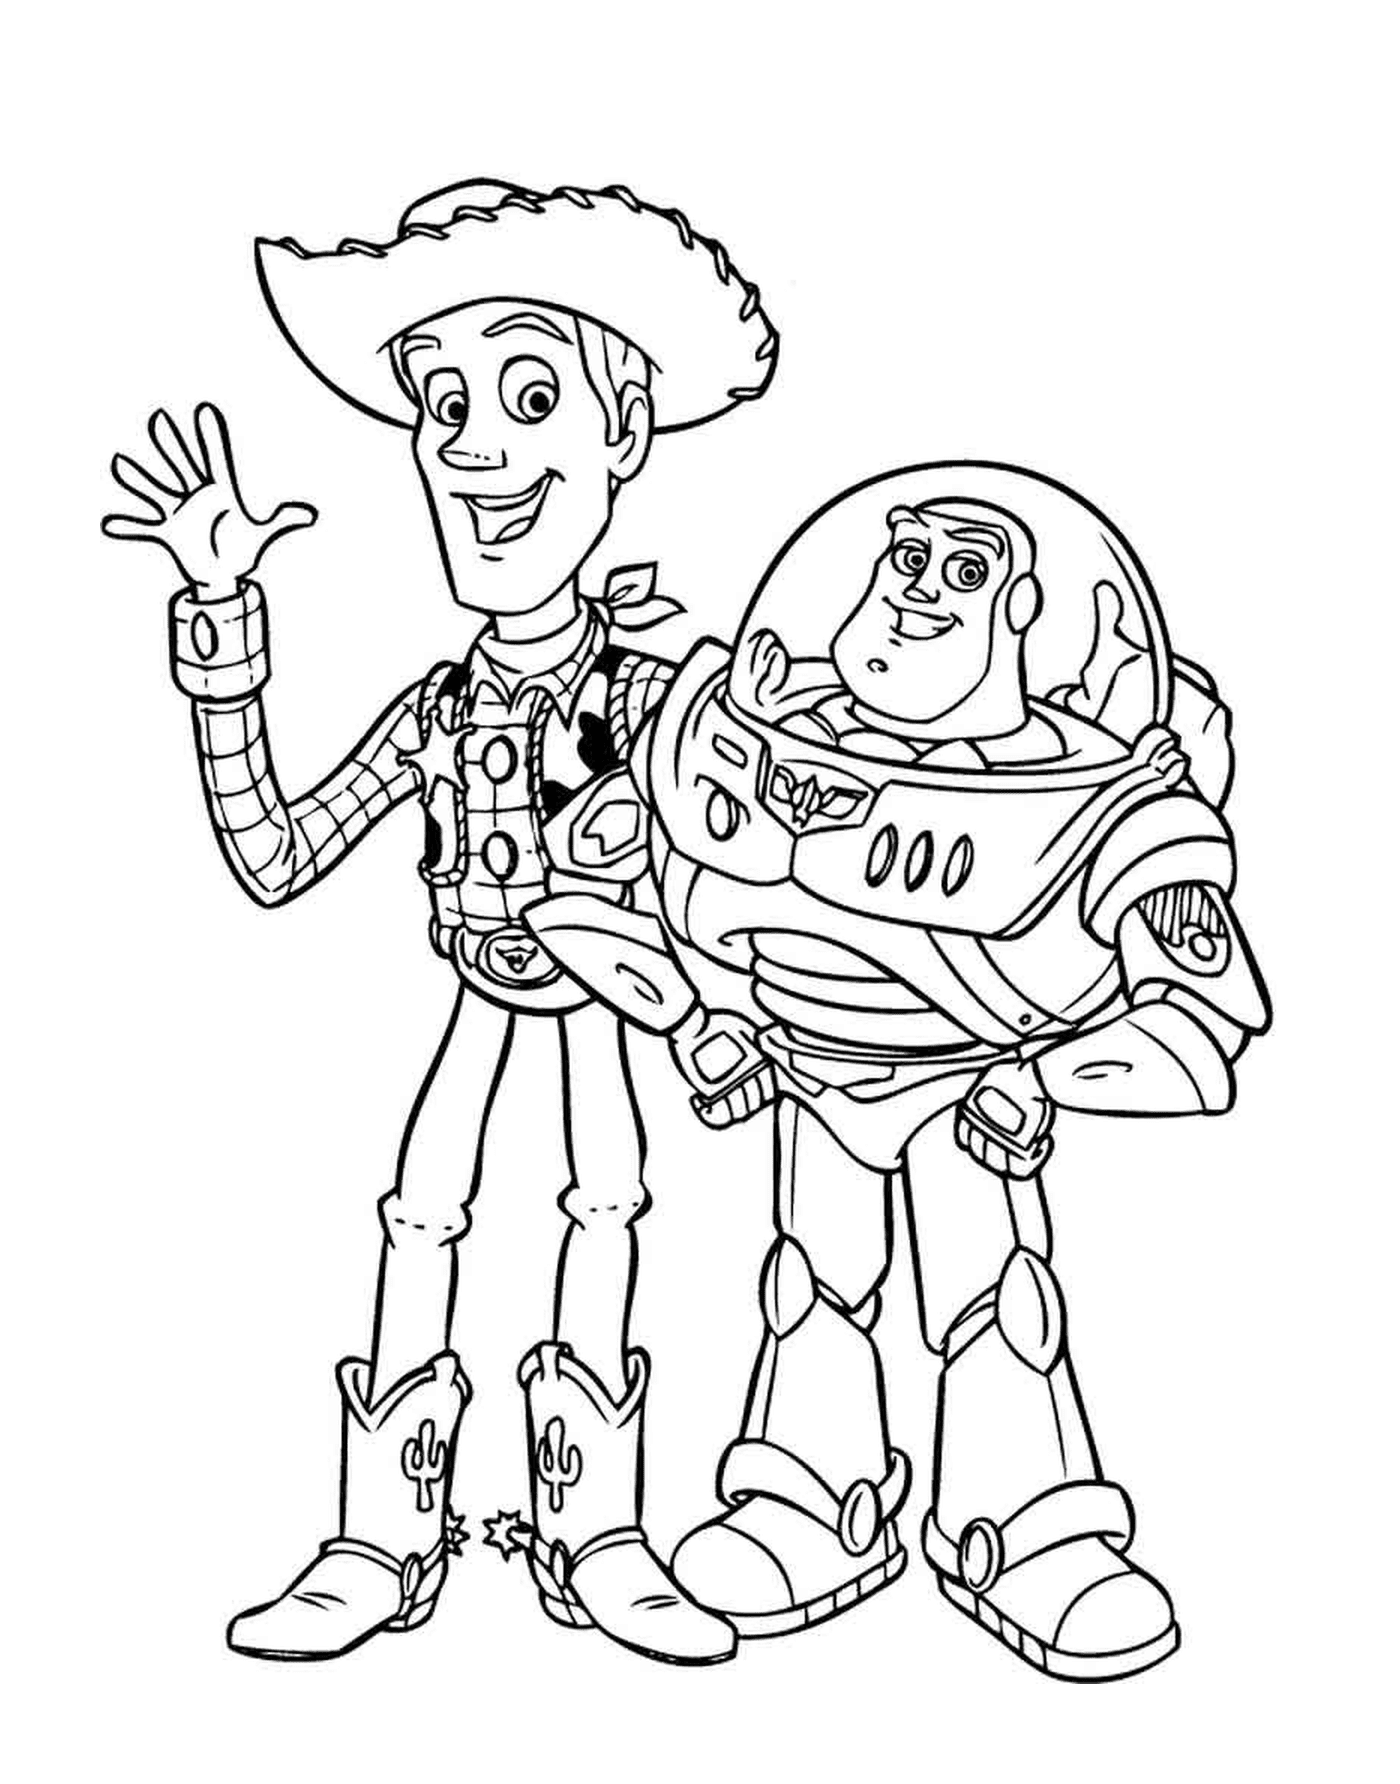  Lightyear e Woody, duo lendário 